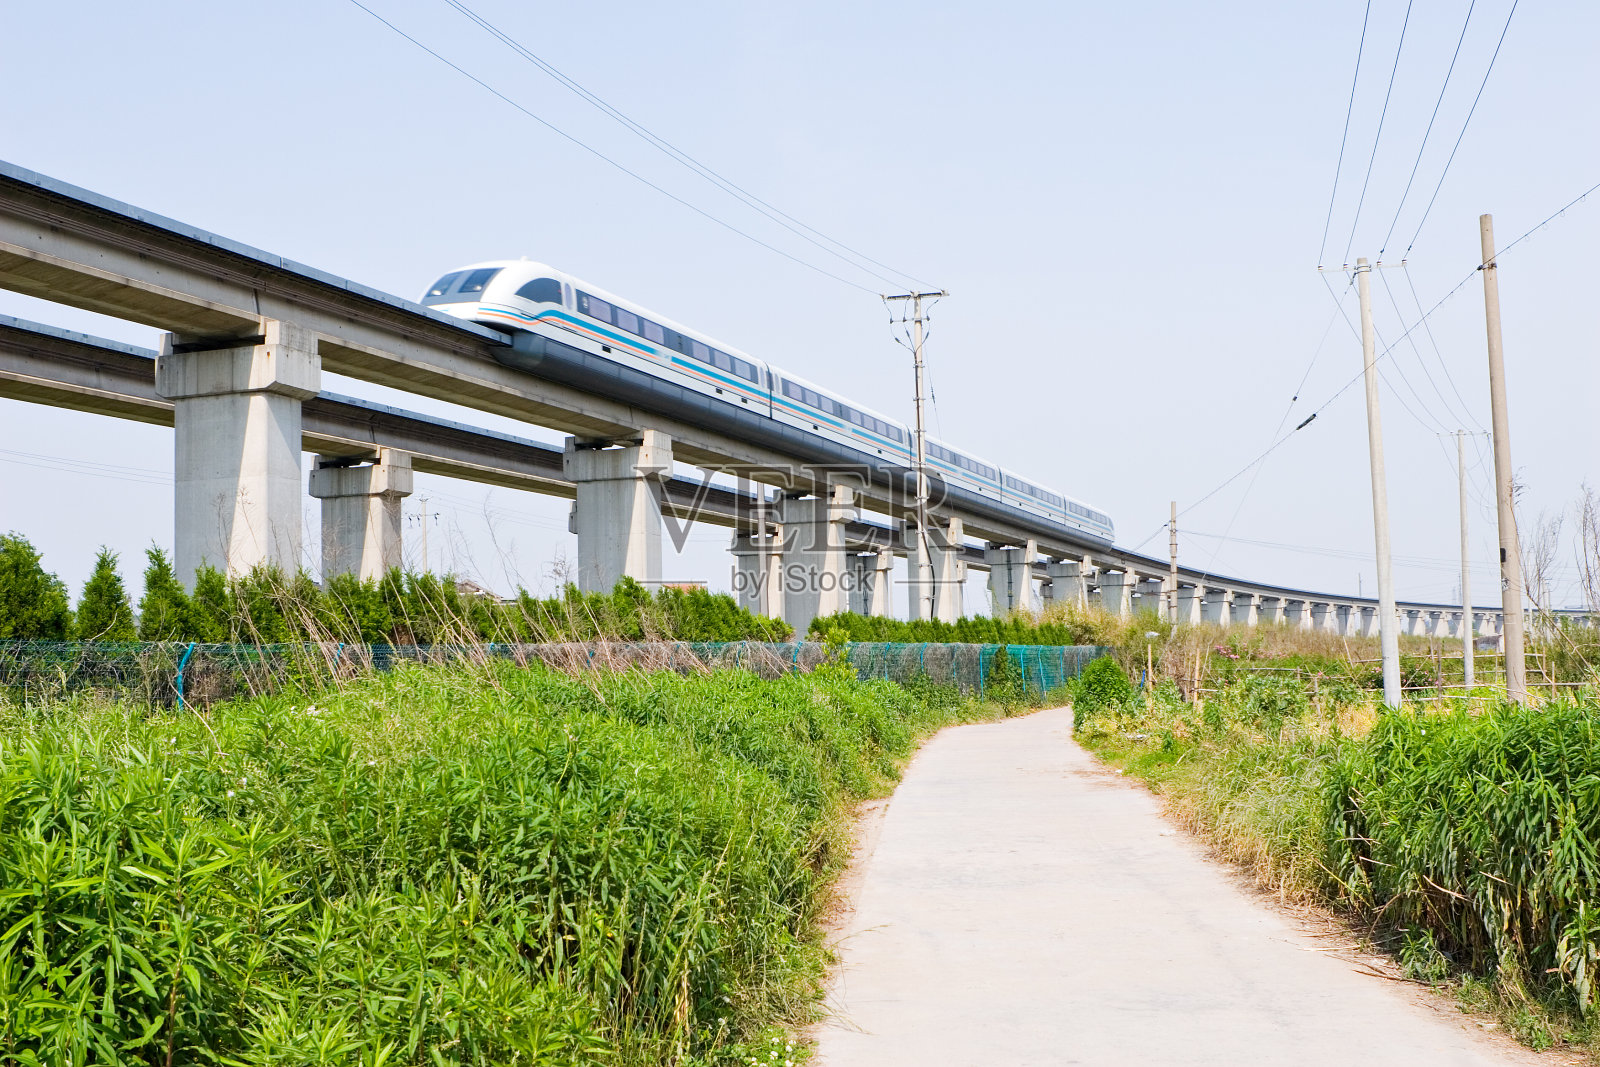 上海:磁悬浮列车以最高速度行驶照片摄影图片